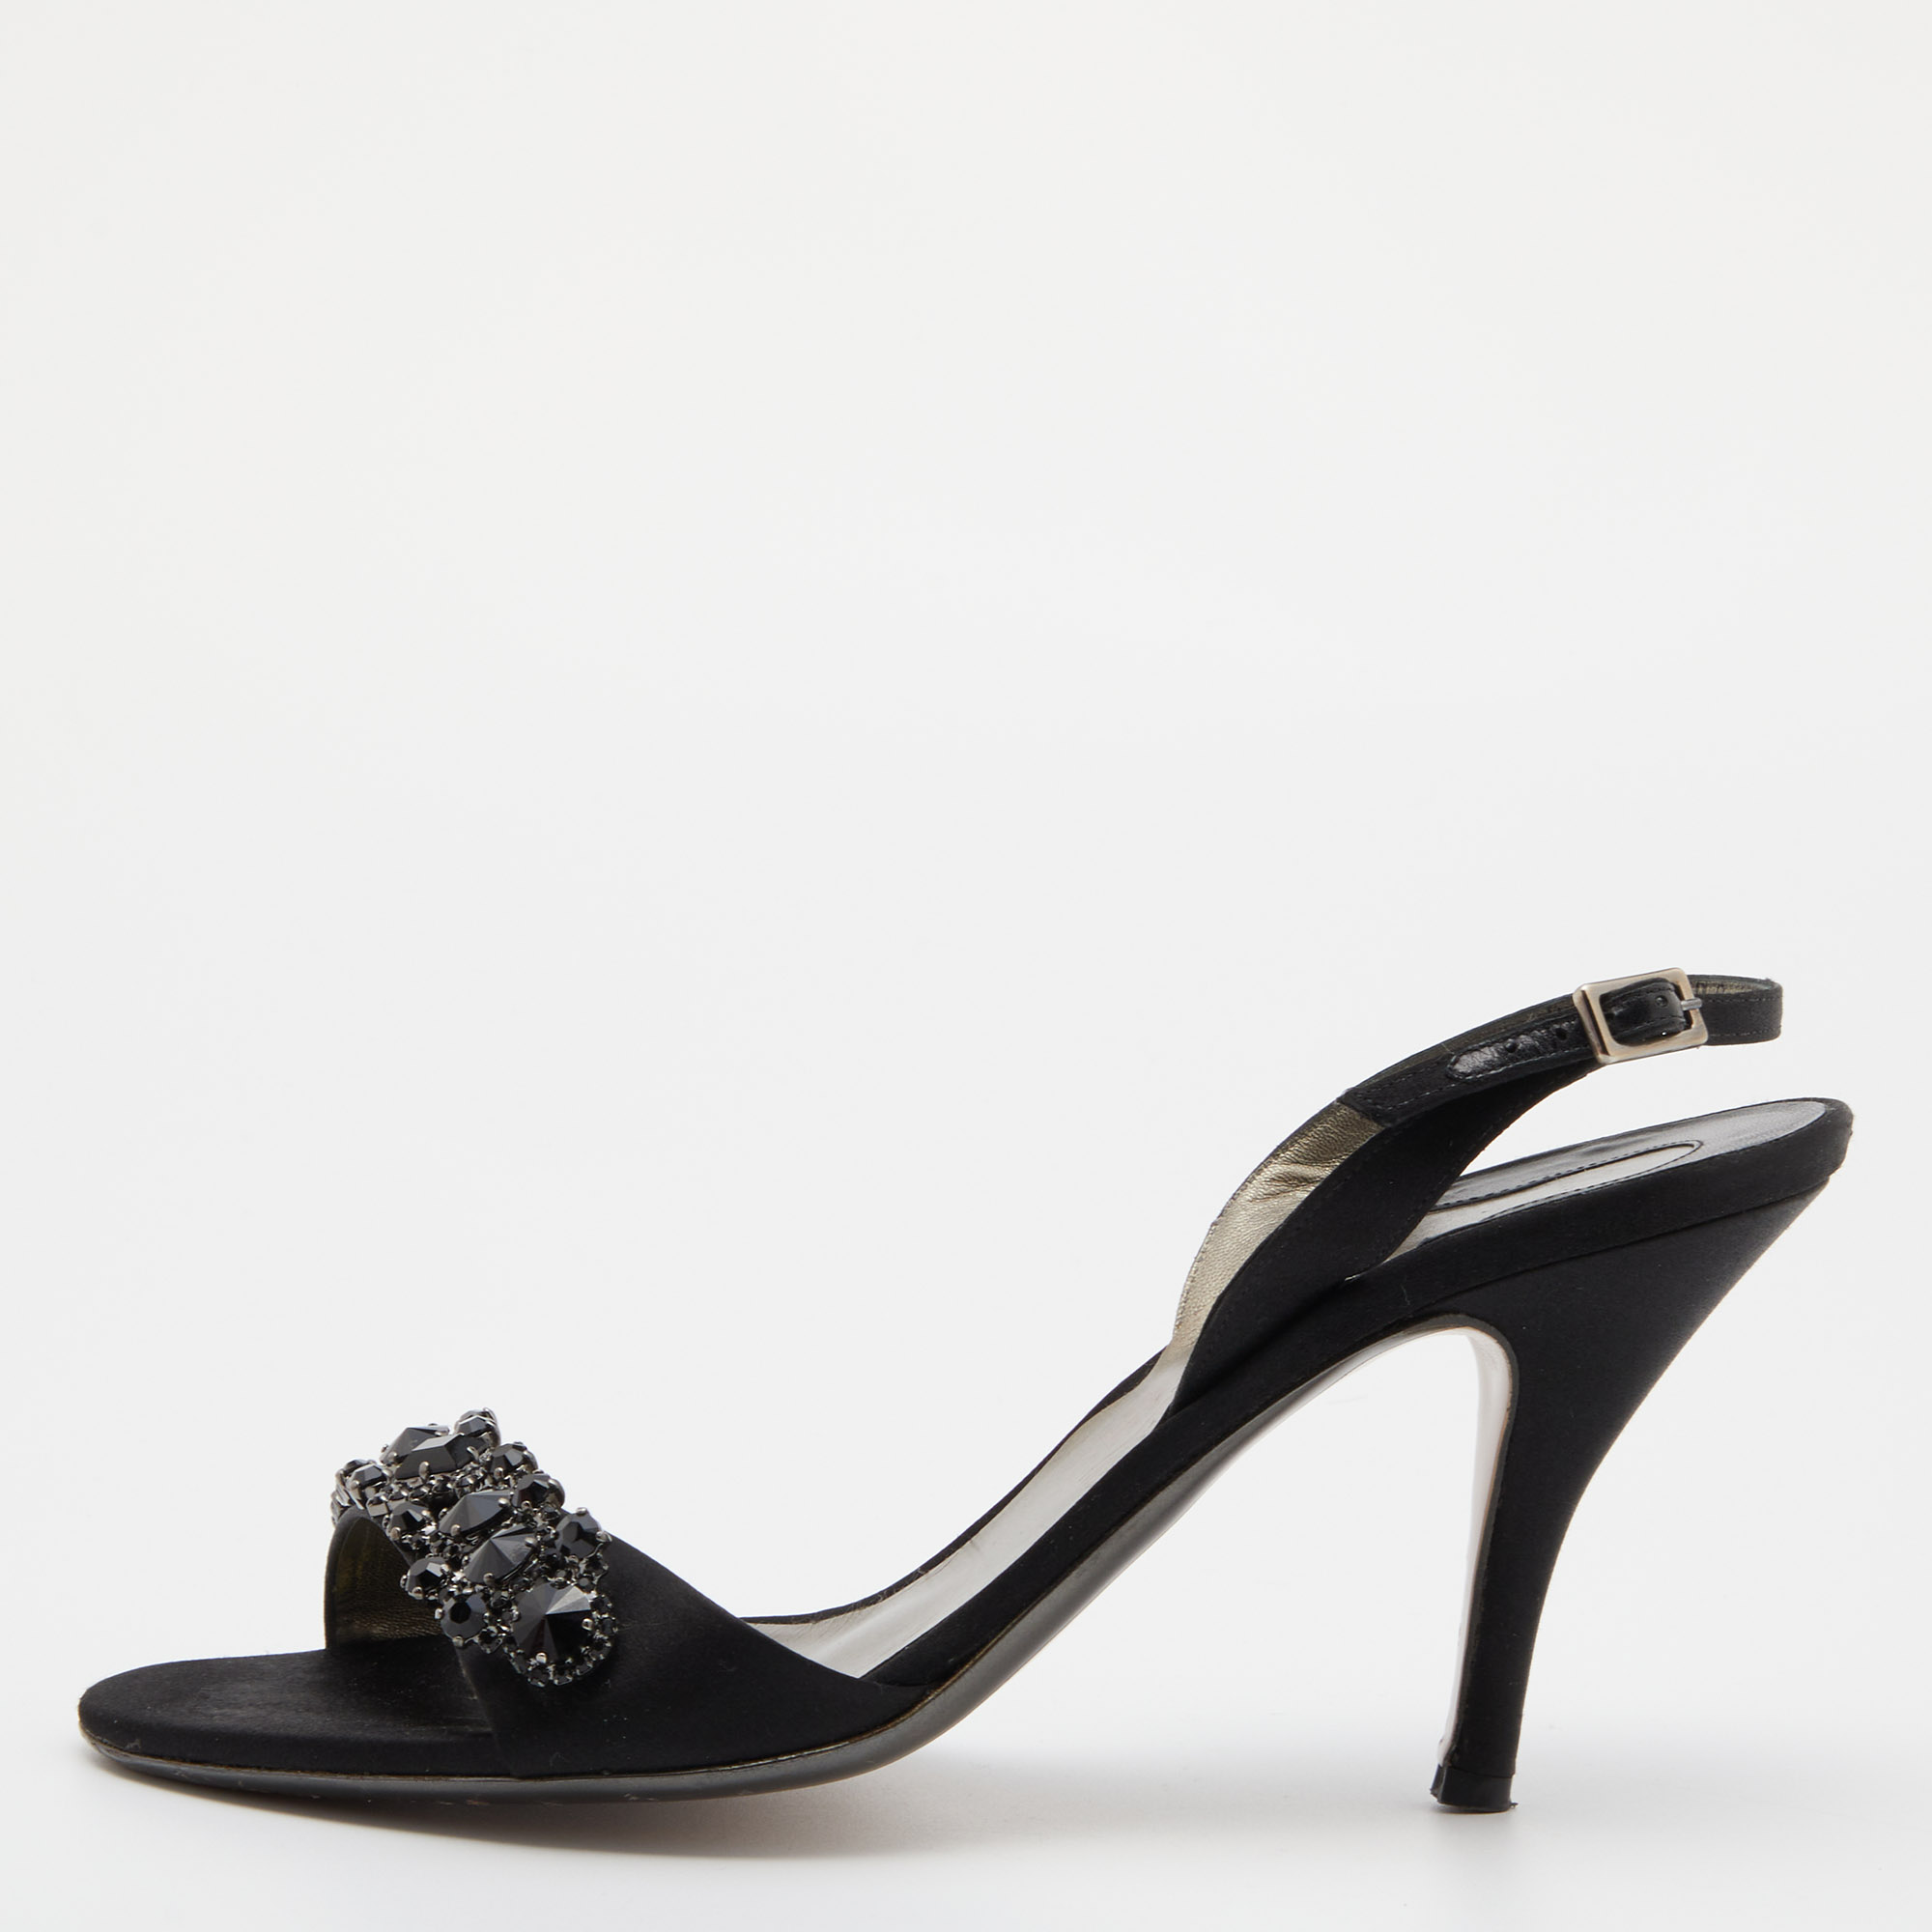 Salvatore ferragamo black satin crystal embellished ankle strap sandals size 40